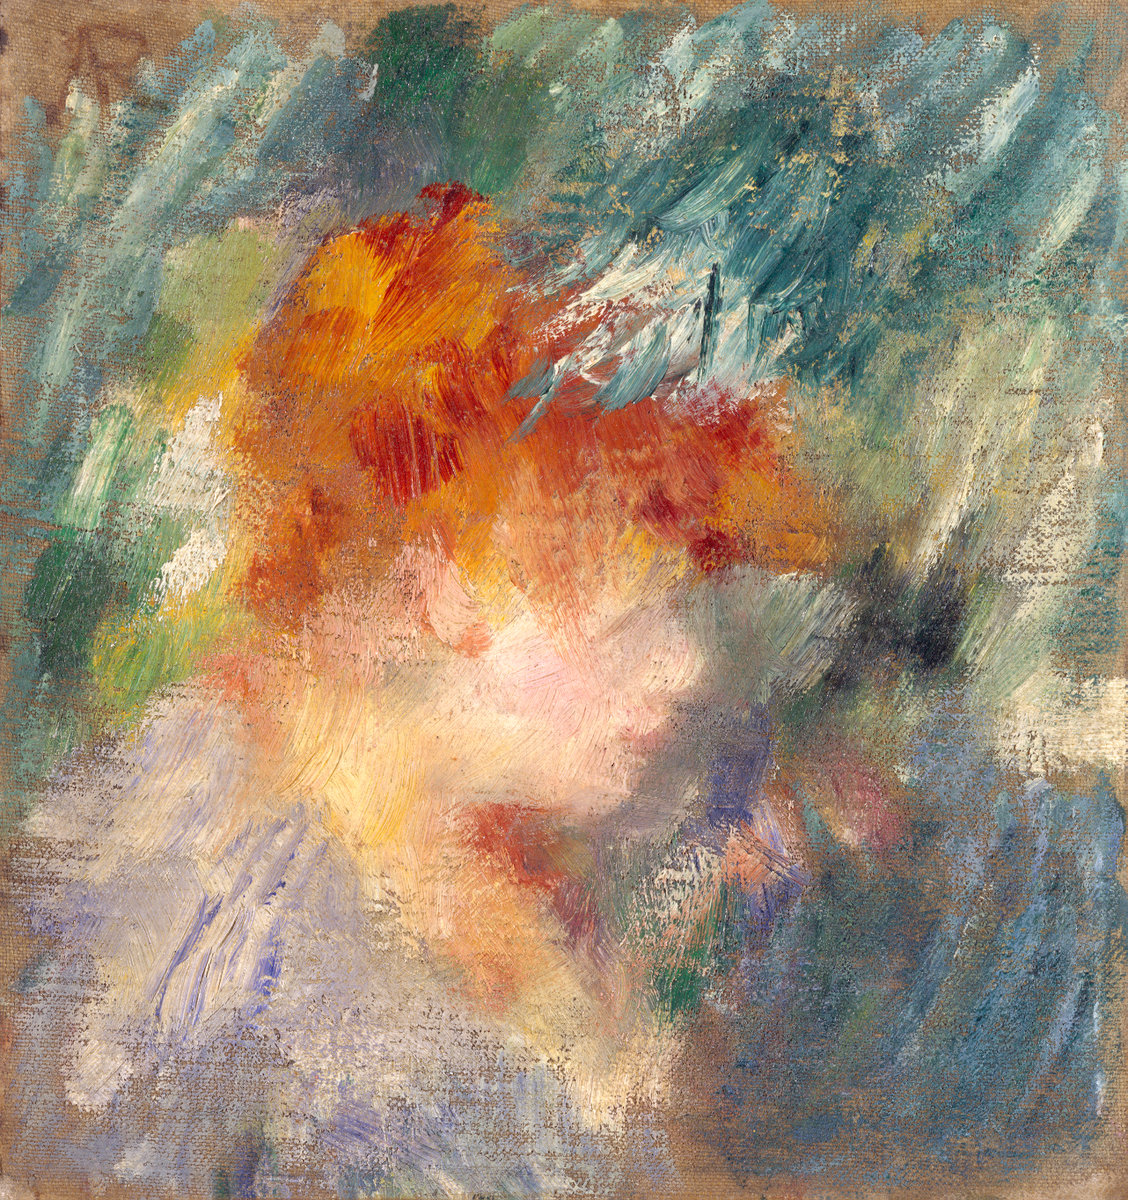 Pierre+Auguste+Renoir-1841-1-19 (508).jpg